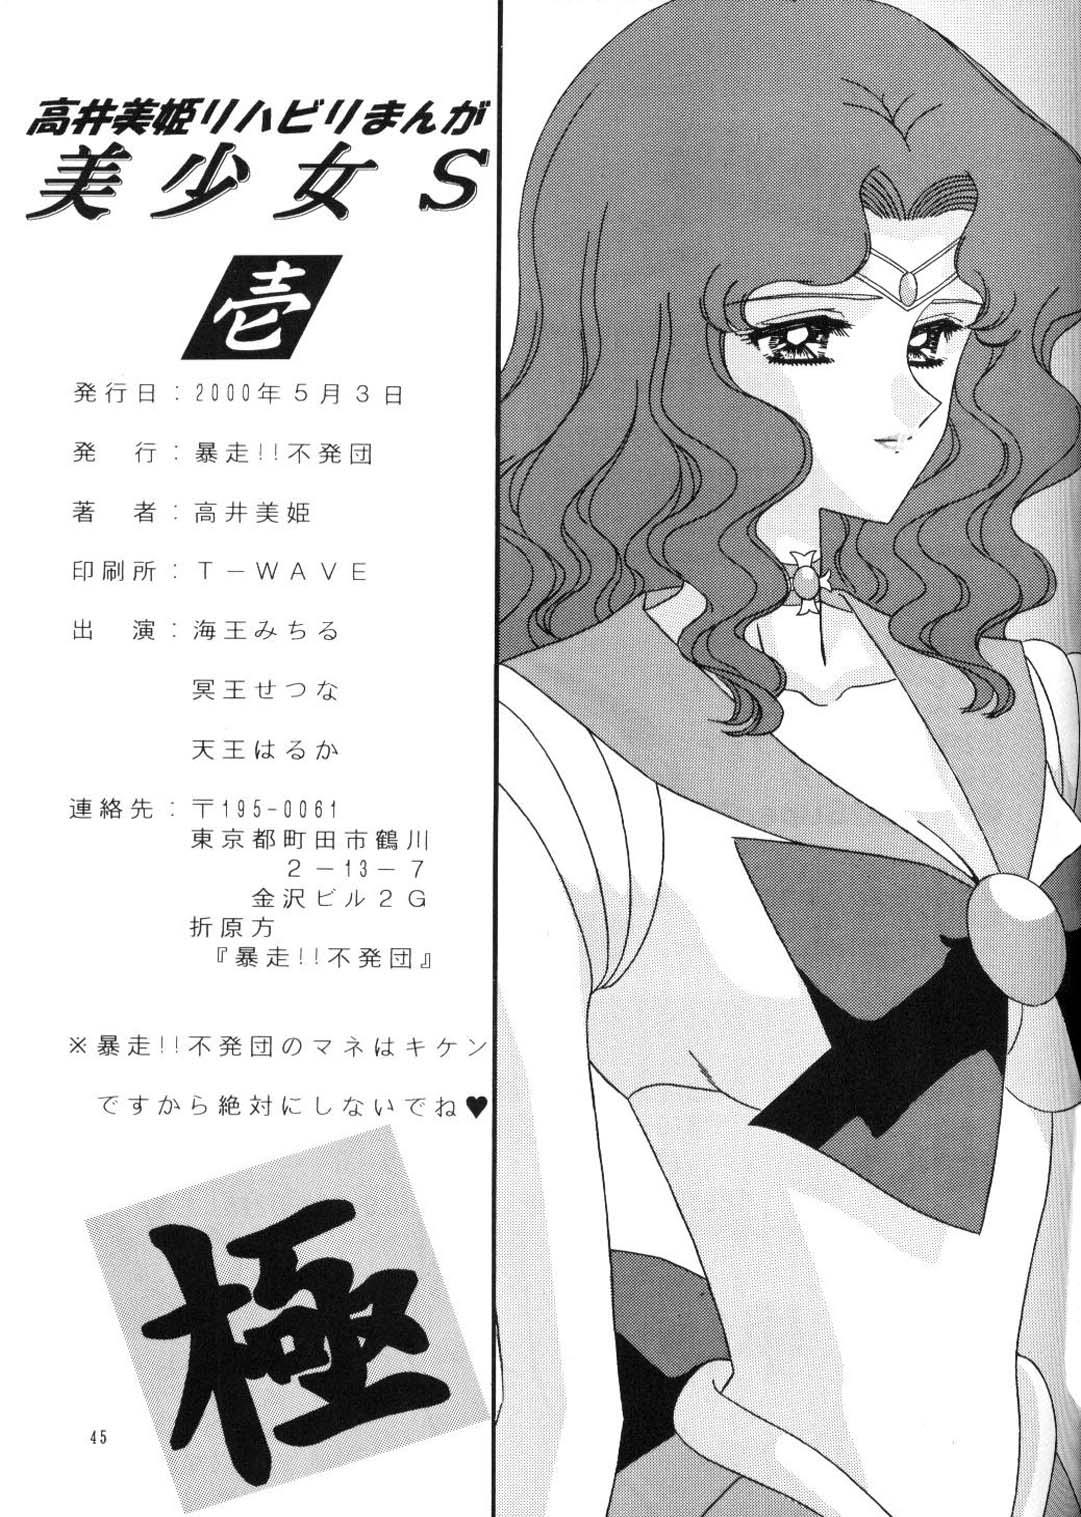 Gapes Gaping Asshole Bishoujo S Ichi - Sailor moon Fudendo - Page 44